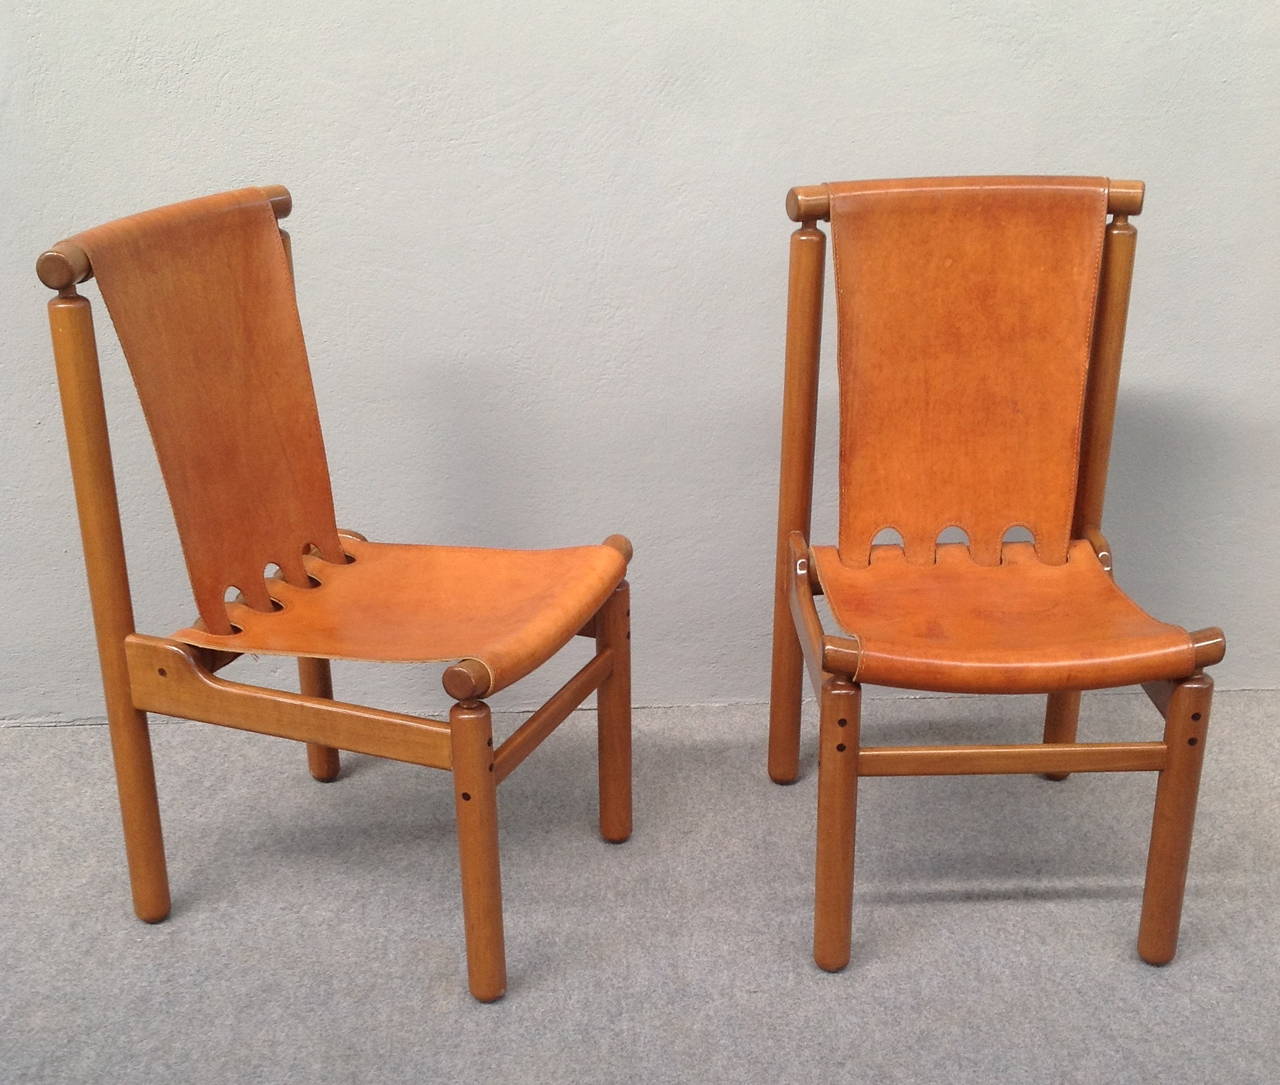 Mid-20th Century Elegant Leather Chairs Attributed to Ilmari Tapiovaara